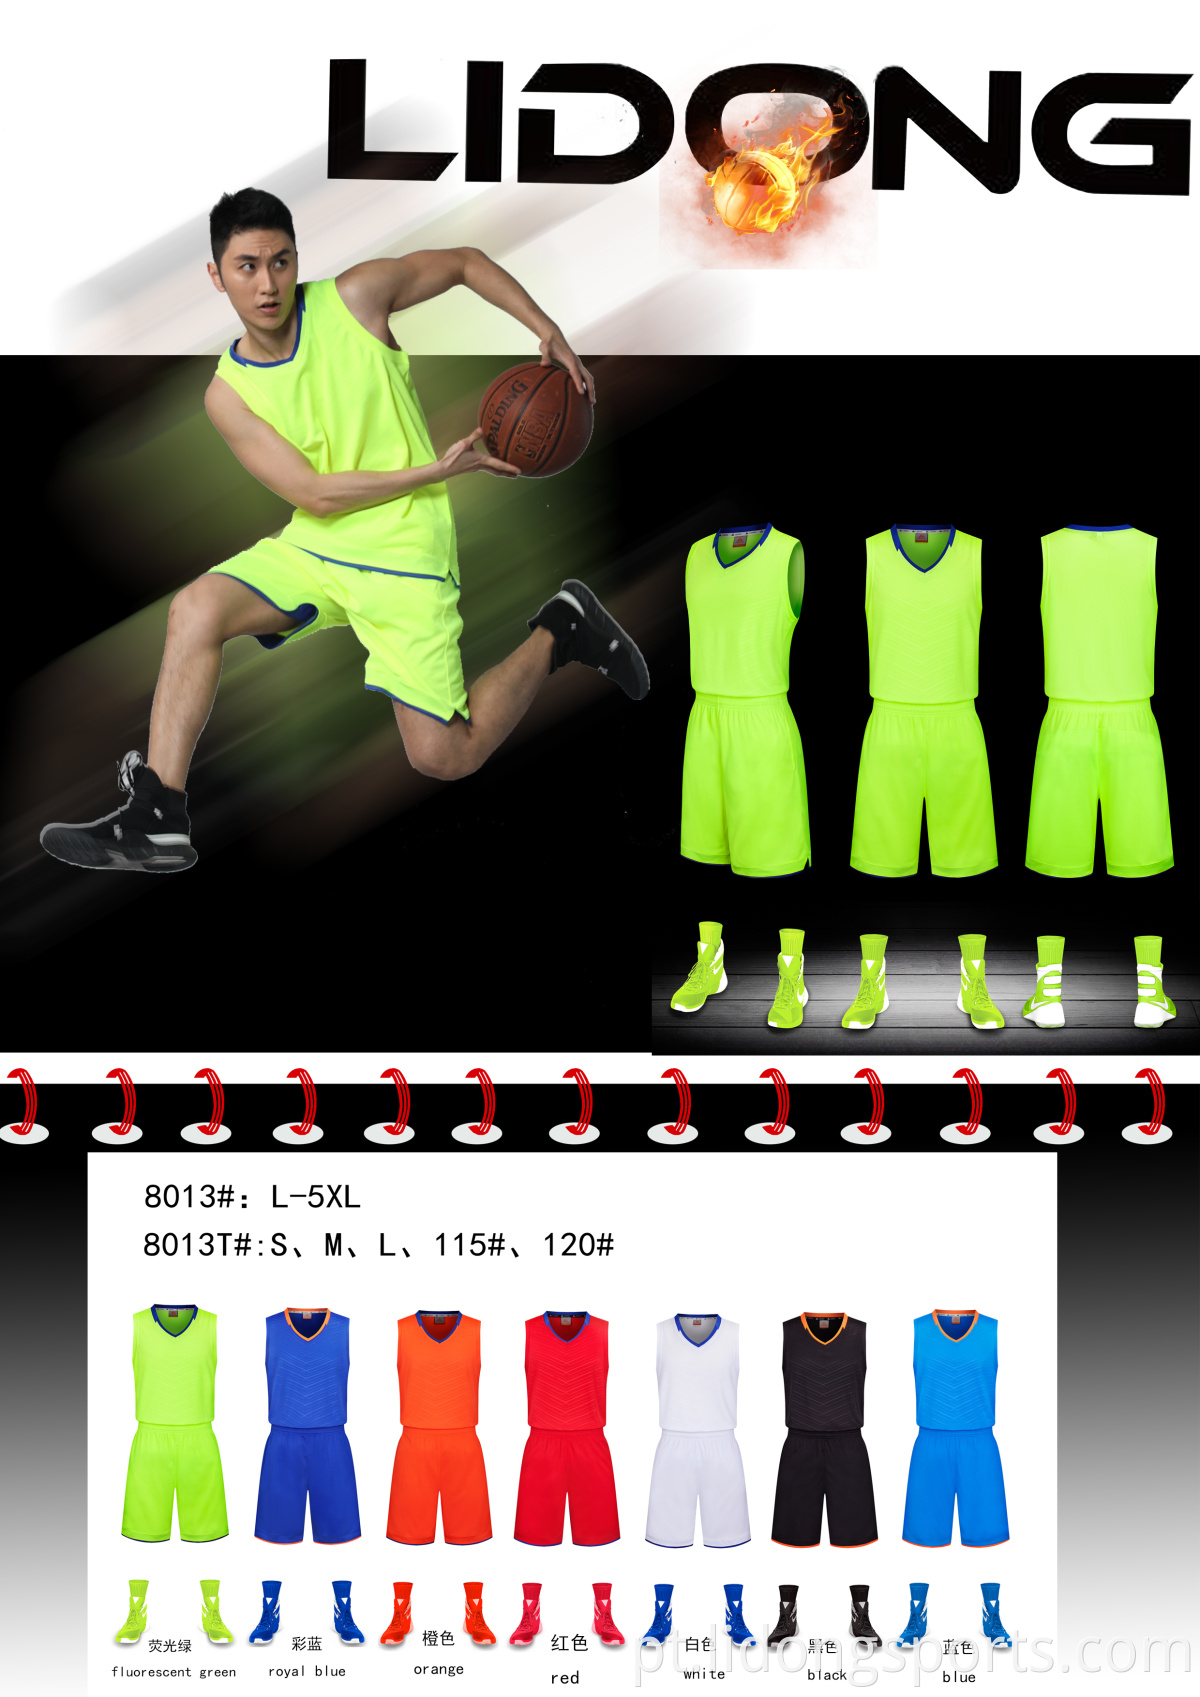 Mais recentes novas camisas de basquete personalizadas design seus próprios uniformes de basquete de basquete uniformes de basquete